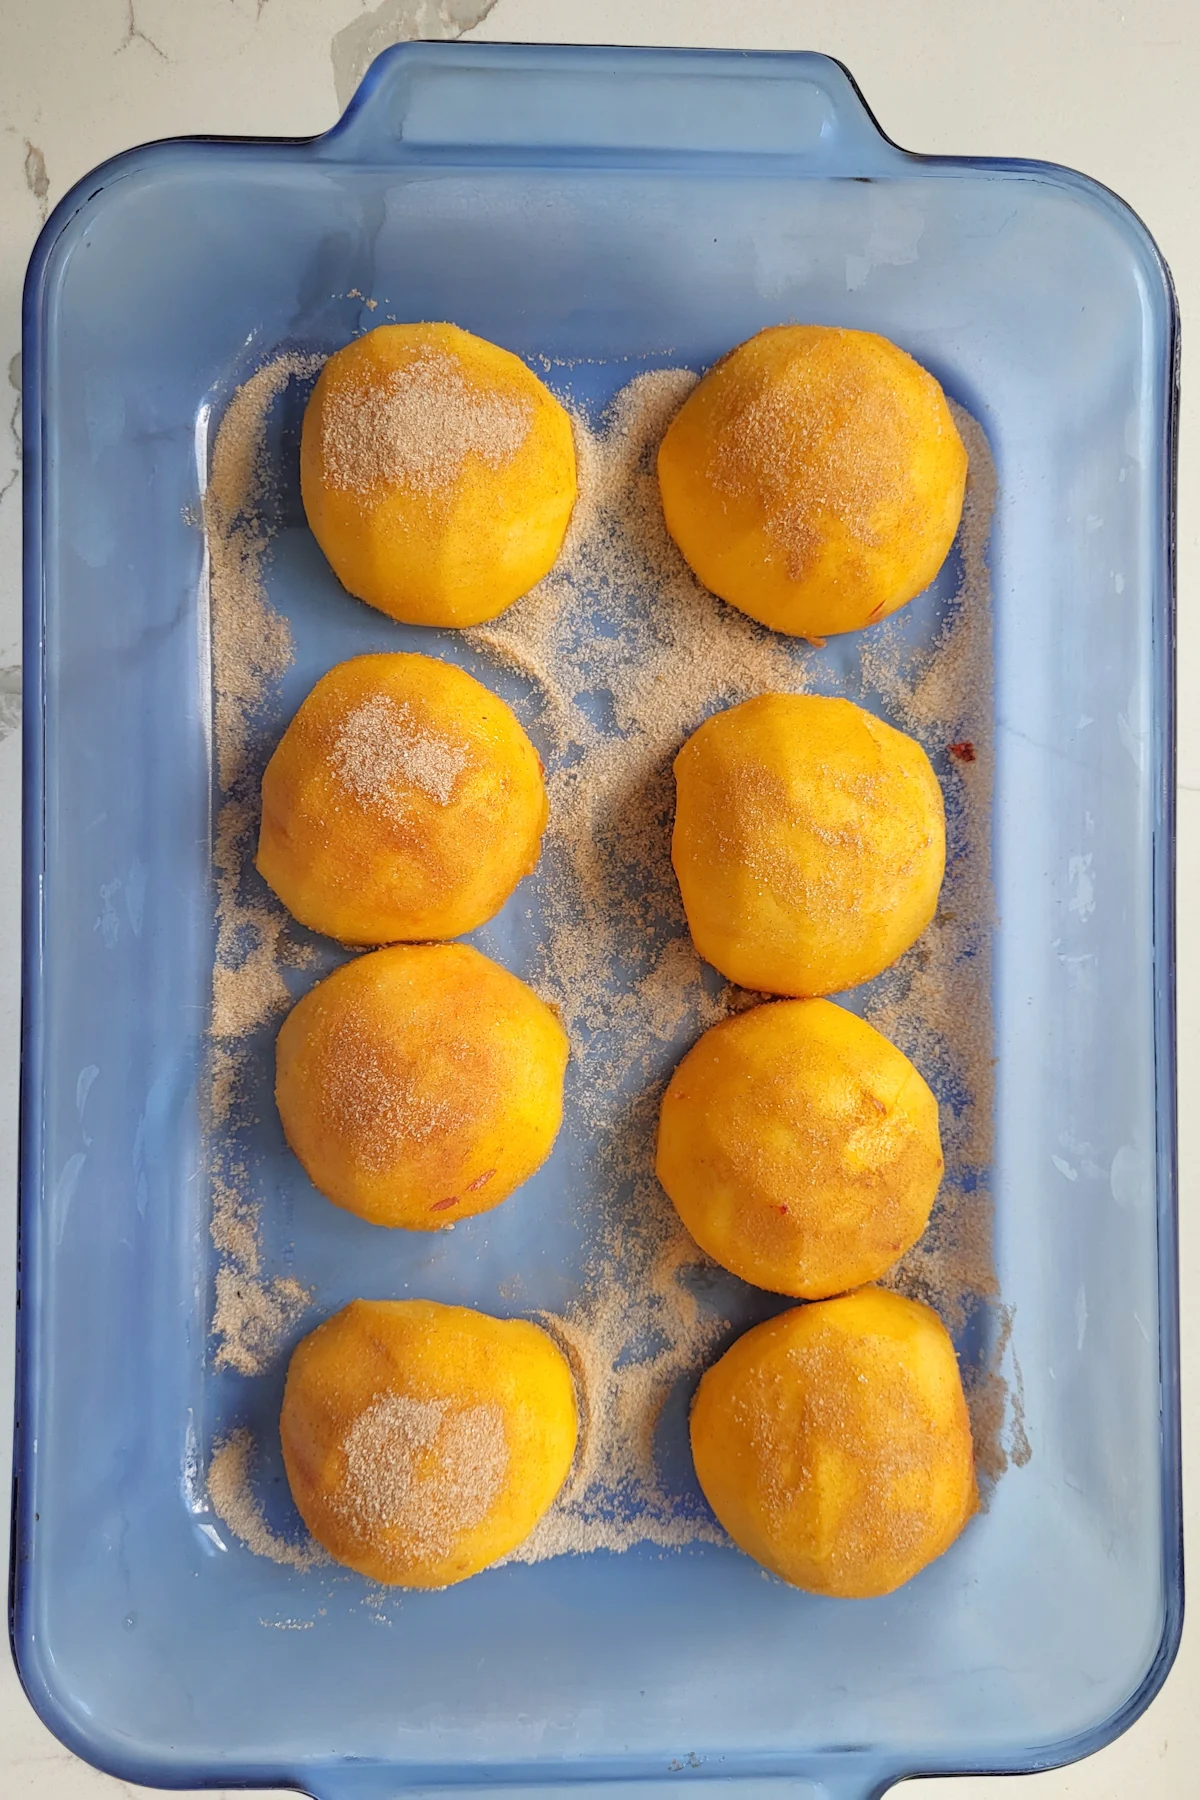 peach halves in a glass baking dish.